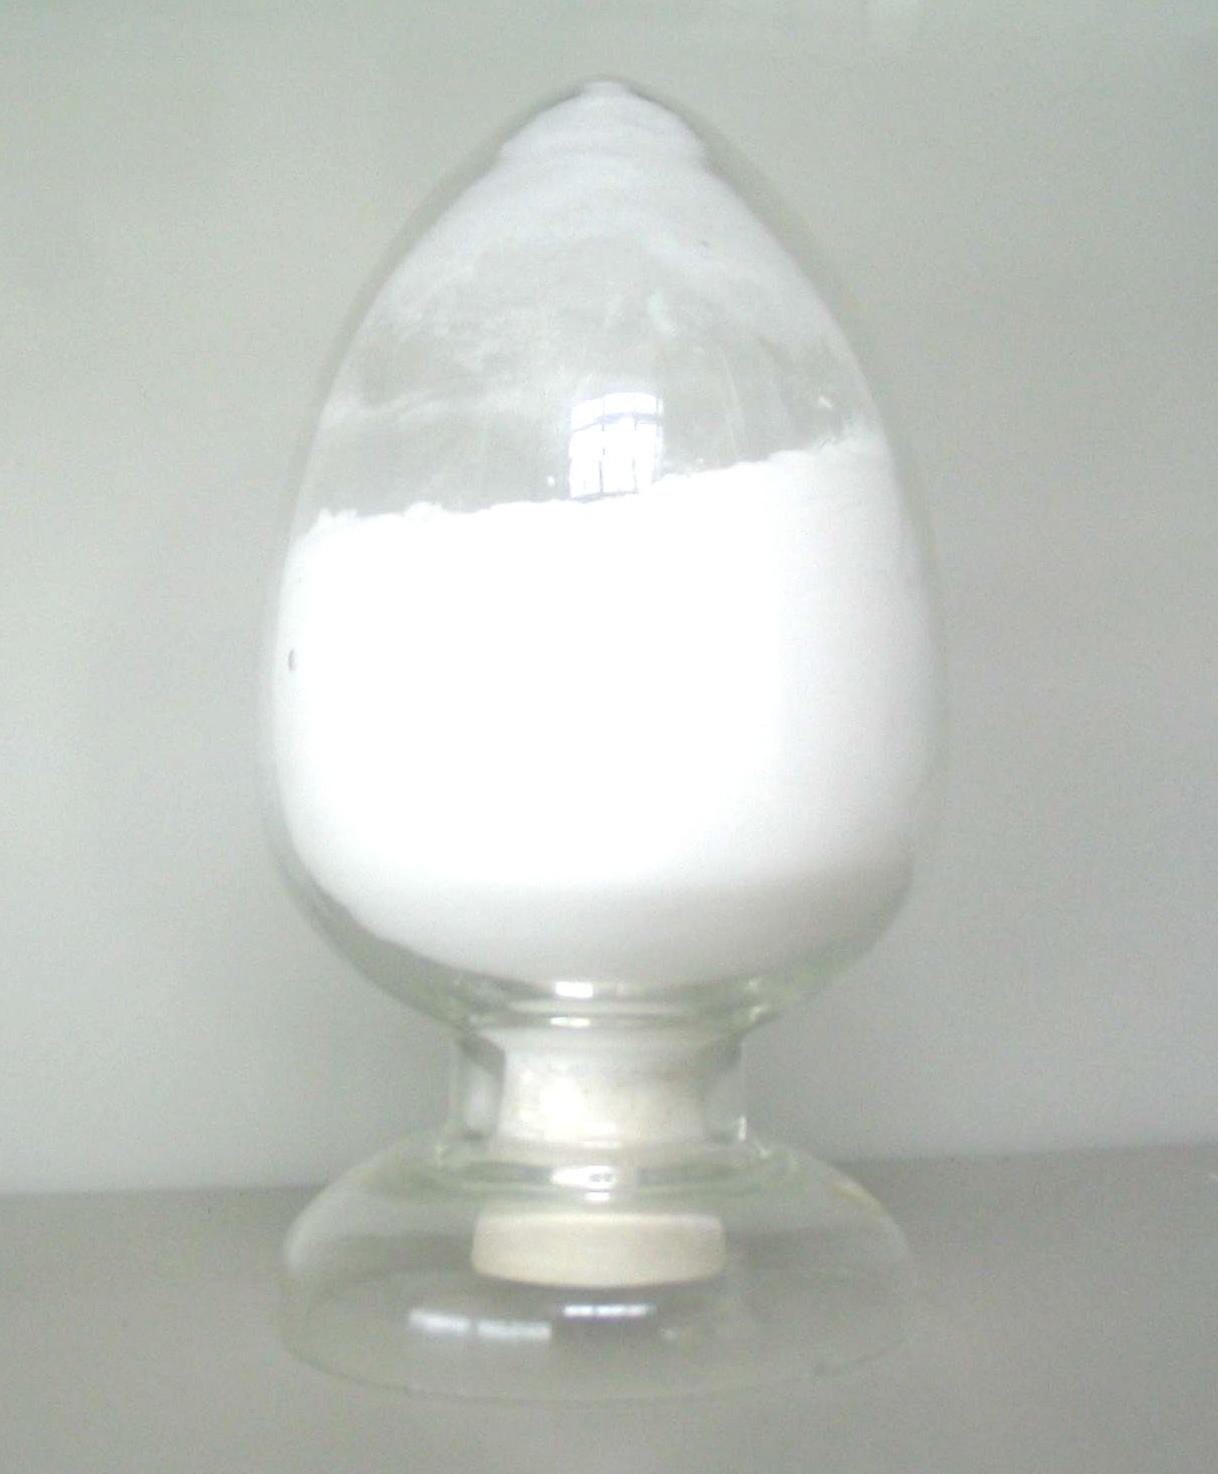 Piperacillin Sodium and Tazobactam sodium